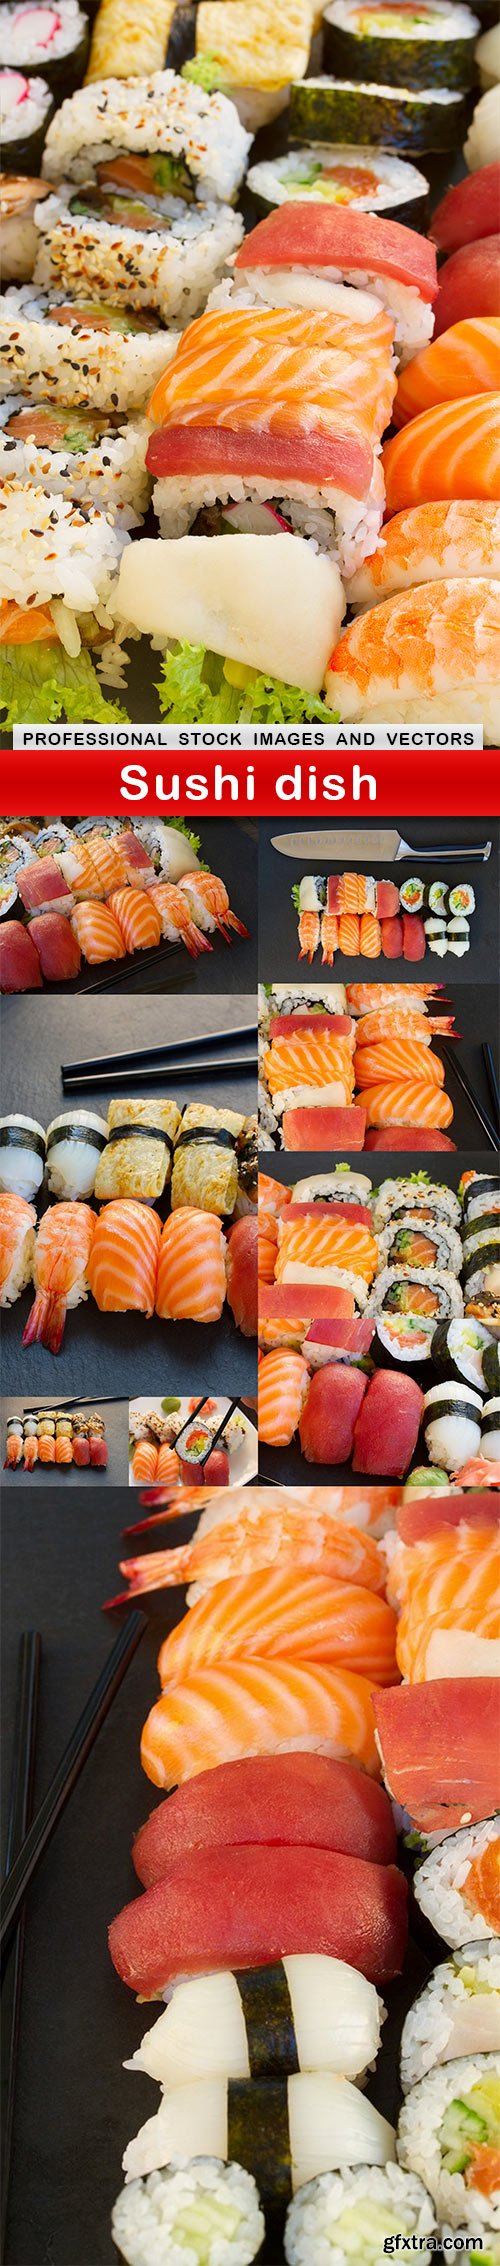 Sushi dish - 10 UHQ JPEG